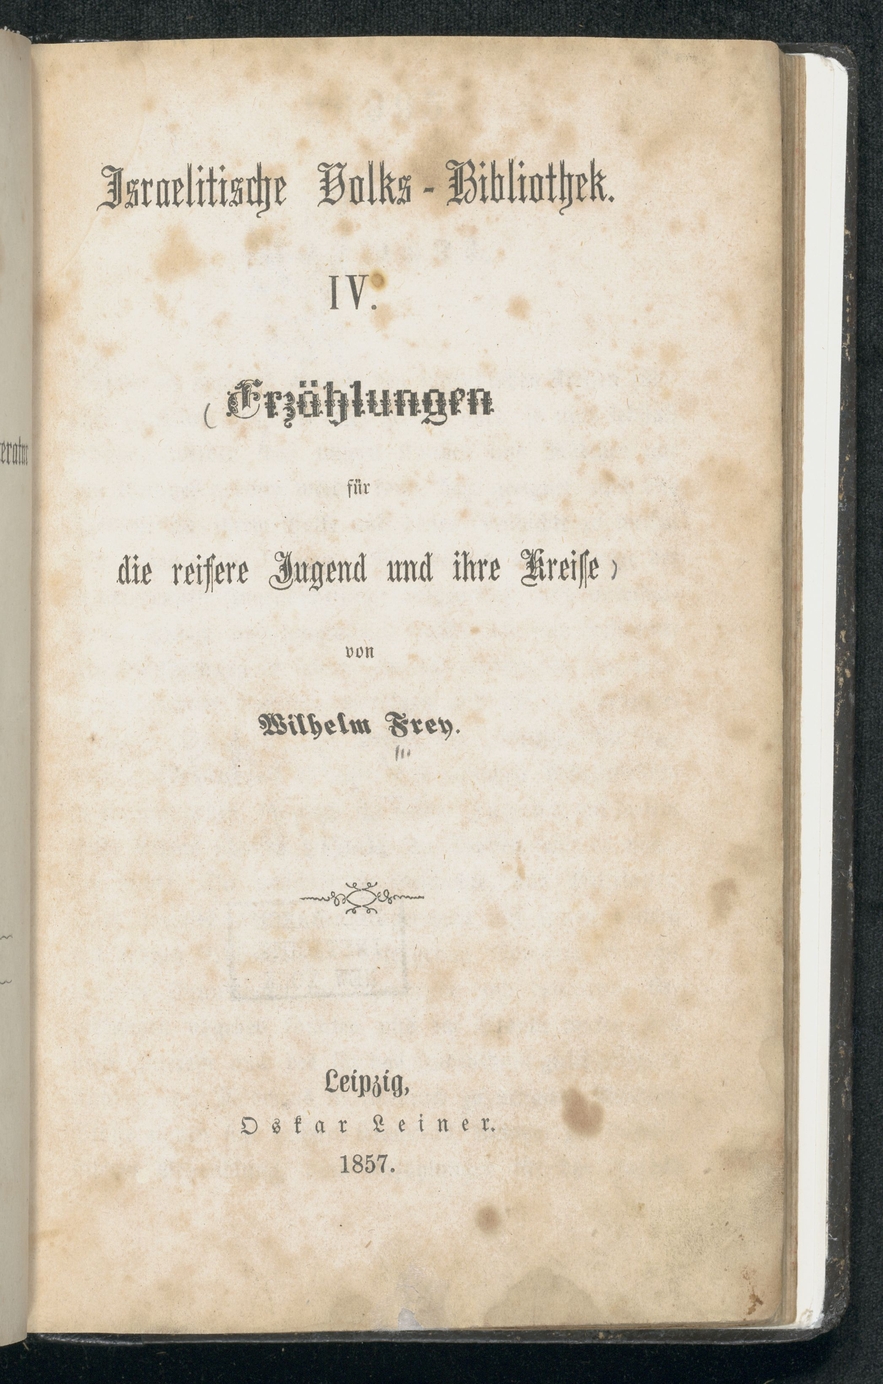 Wilhelm Frey's Erzaehlungen fuer die reifere Jugend und ihre Kreise